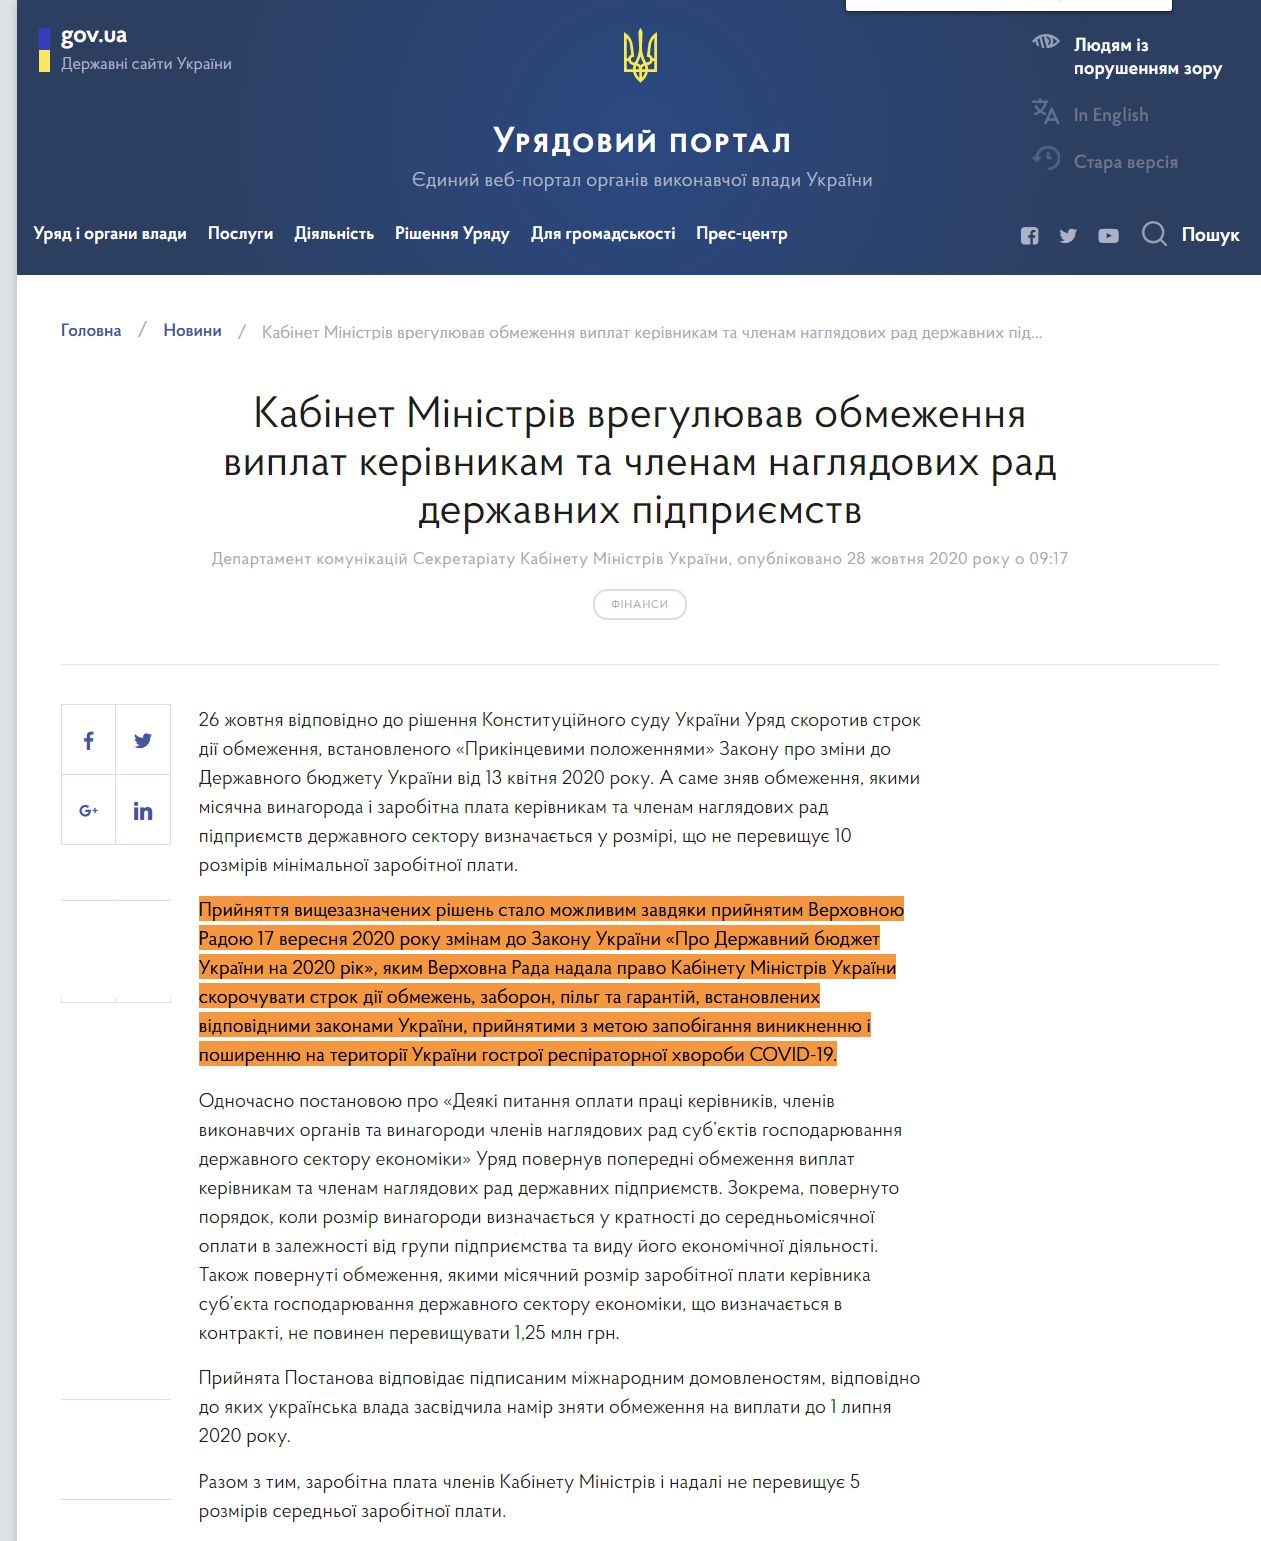 https://www.kmu.gov.ua/news/kabinet-ministriv-vregulyuvav-obmezhennya-viplat-kerivnikam-ta-chlenam-naglyadovih-rad-derzhavnih-pidpriyemstv